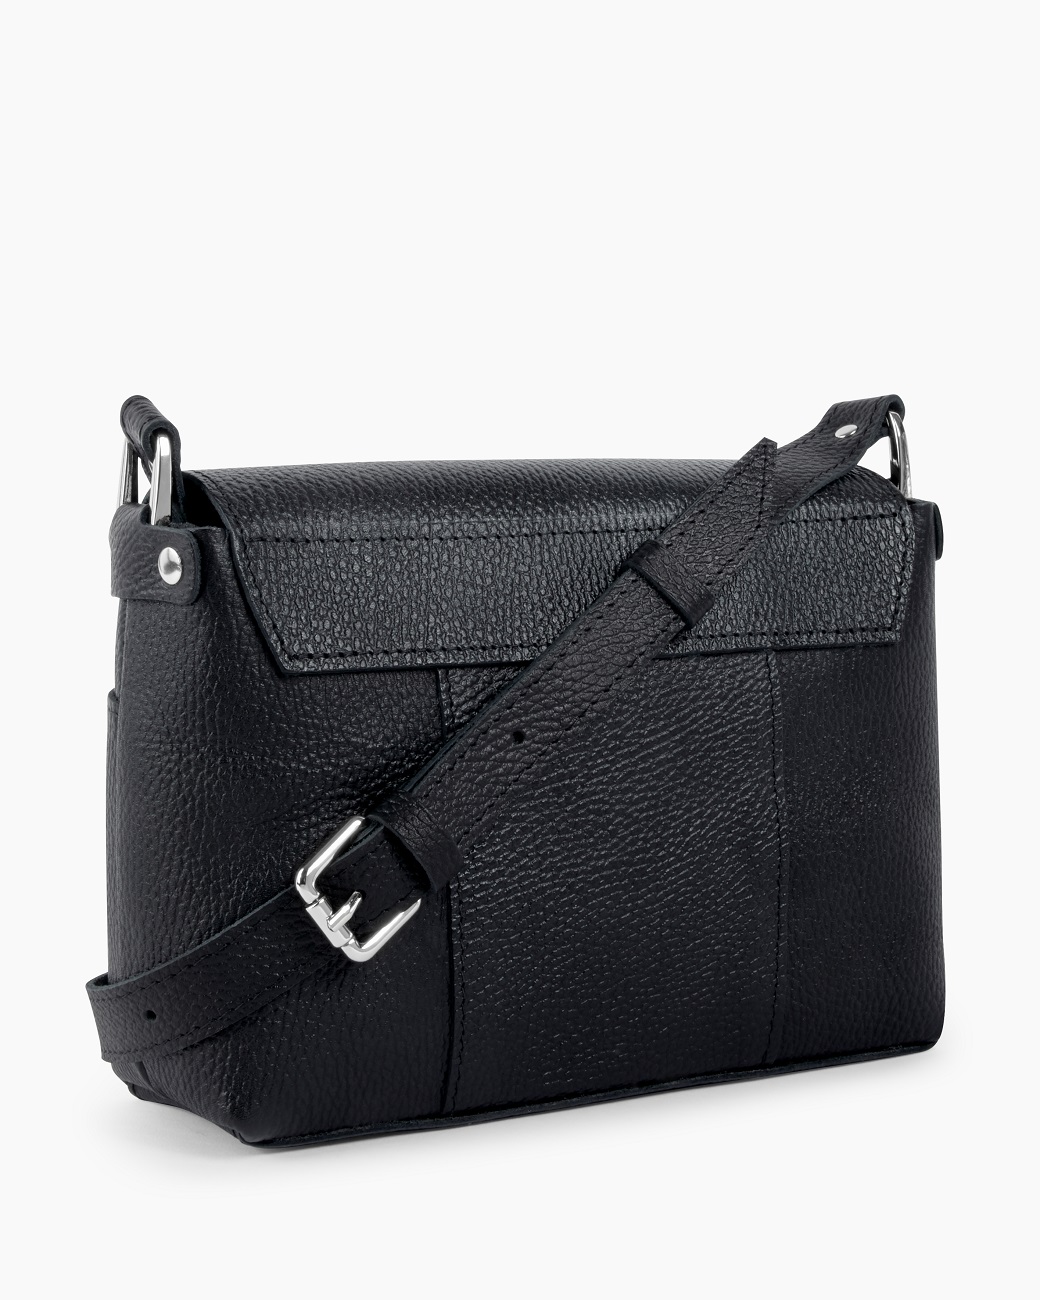 Женская сумка через плечо из натуральной кожи черная A011 black grain